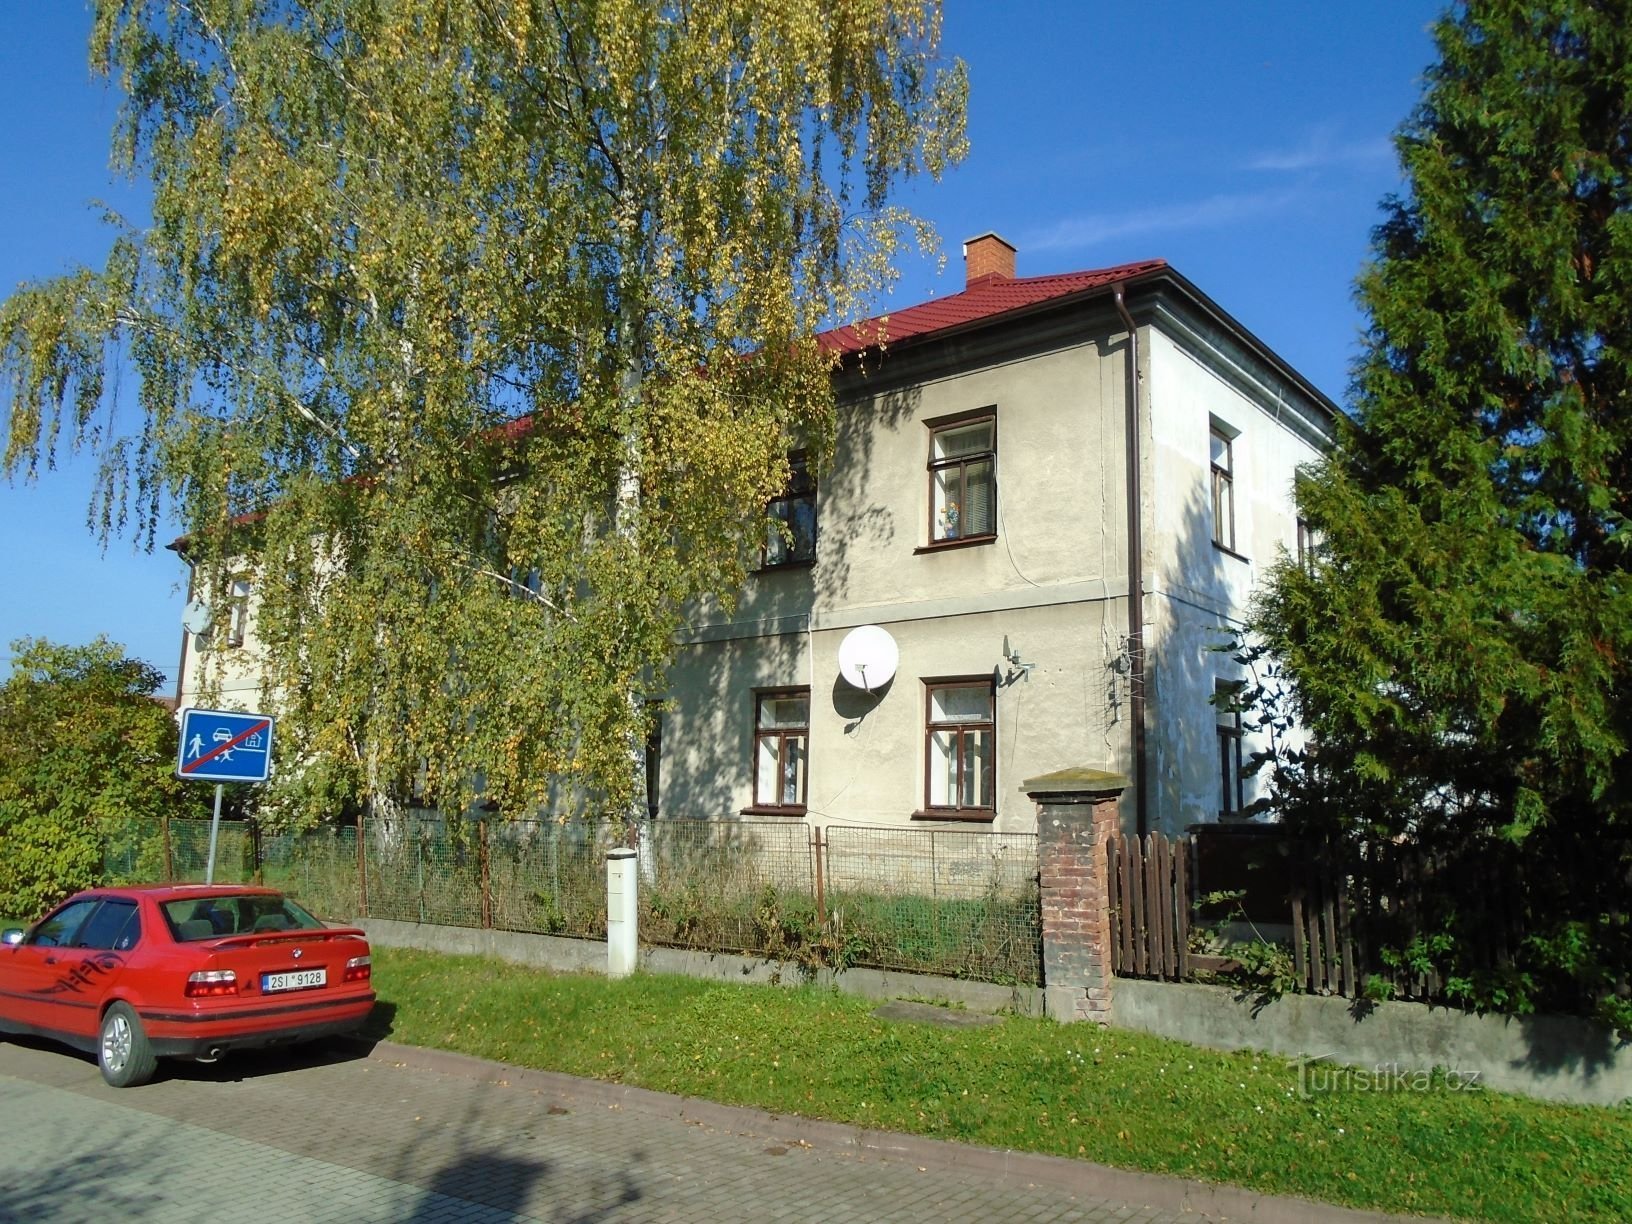 Old school nro 2 (Černilov, 15.10.2017)